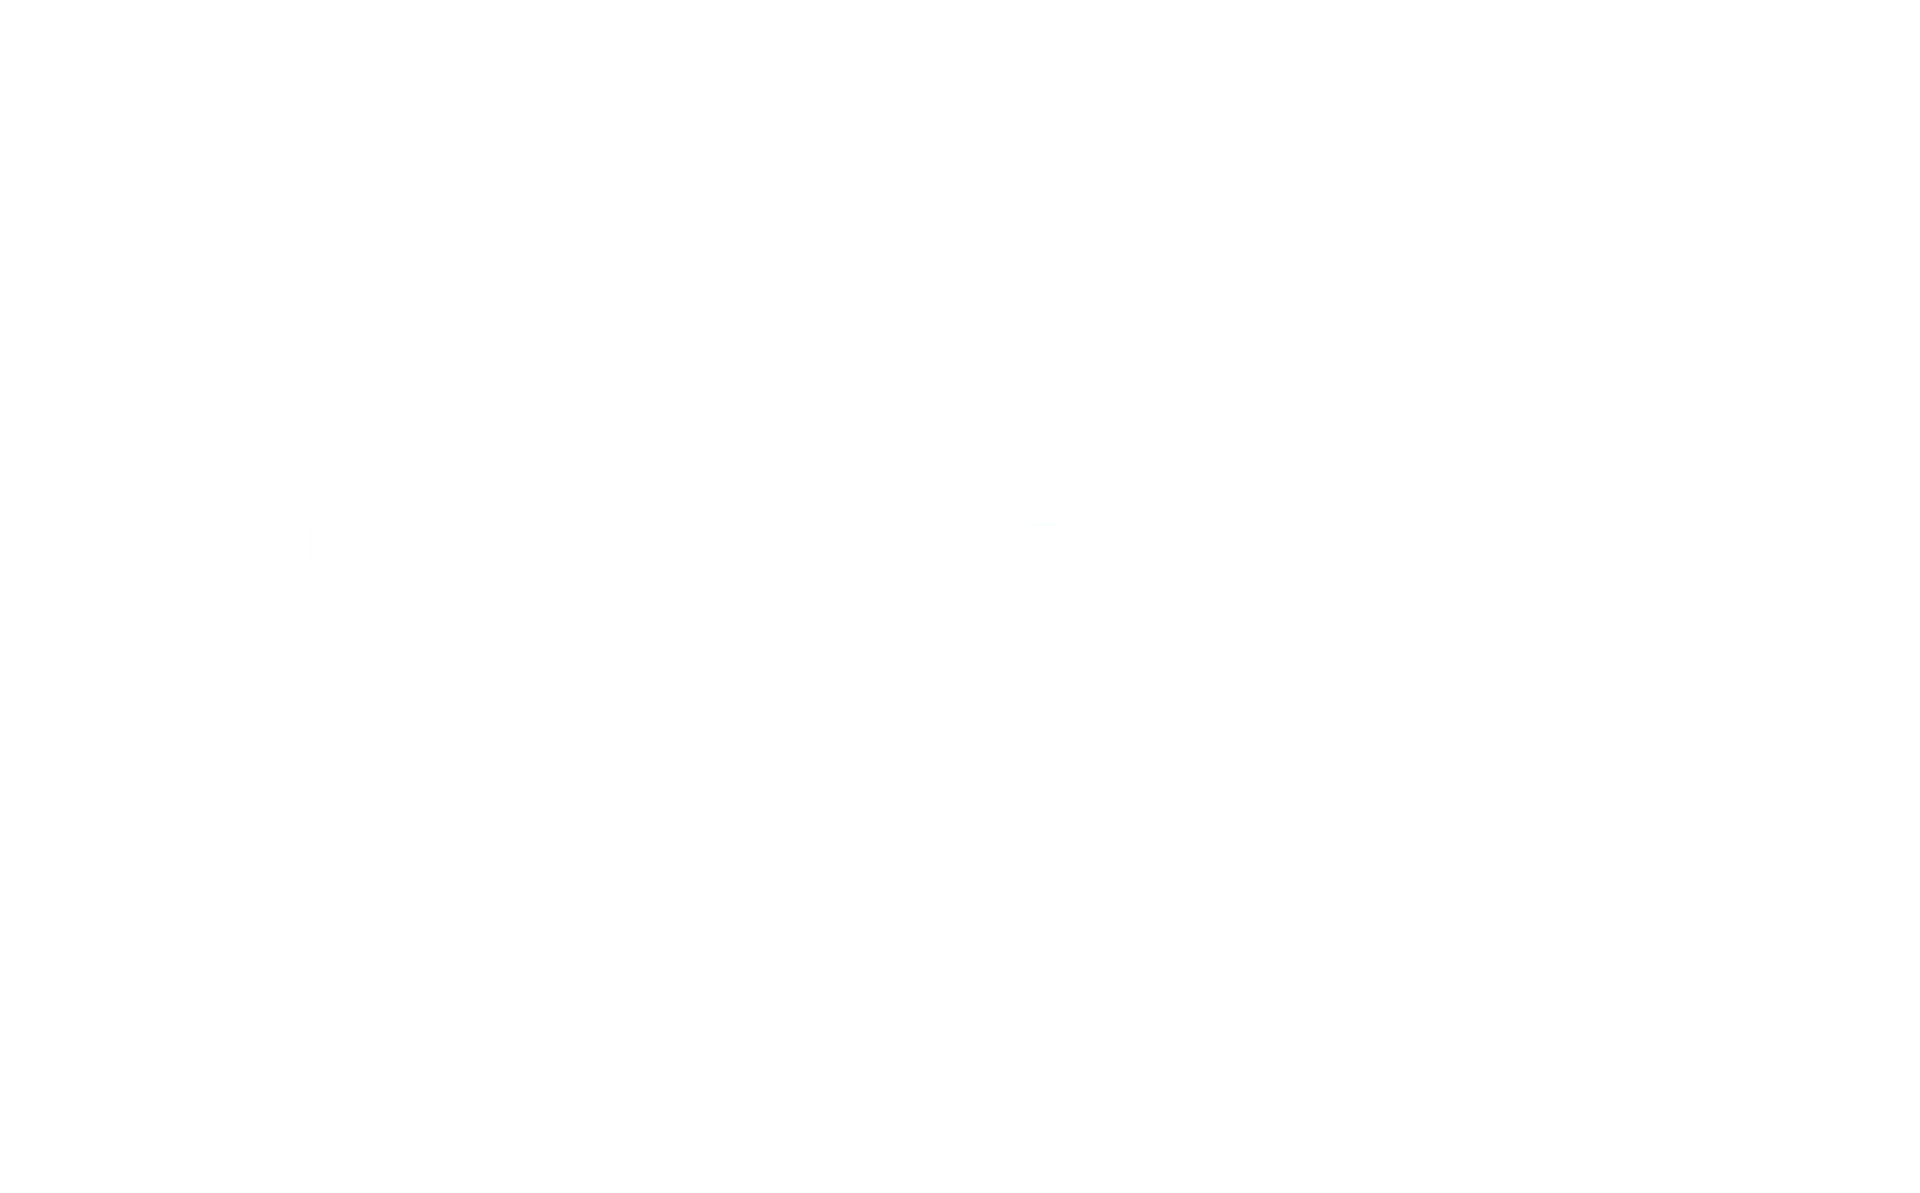 Logo COPACA meedoen met afasie